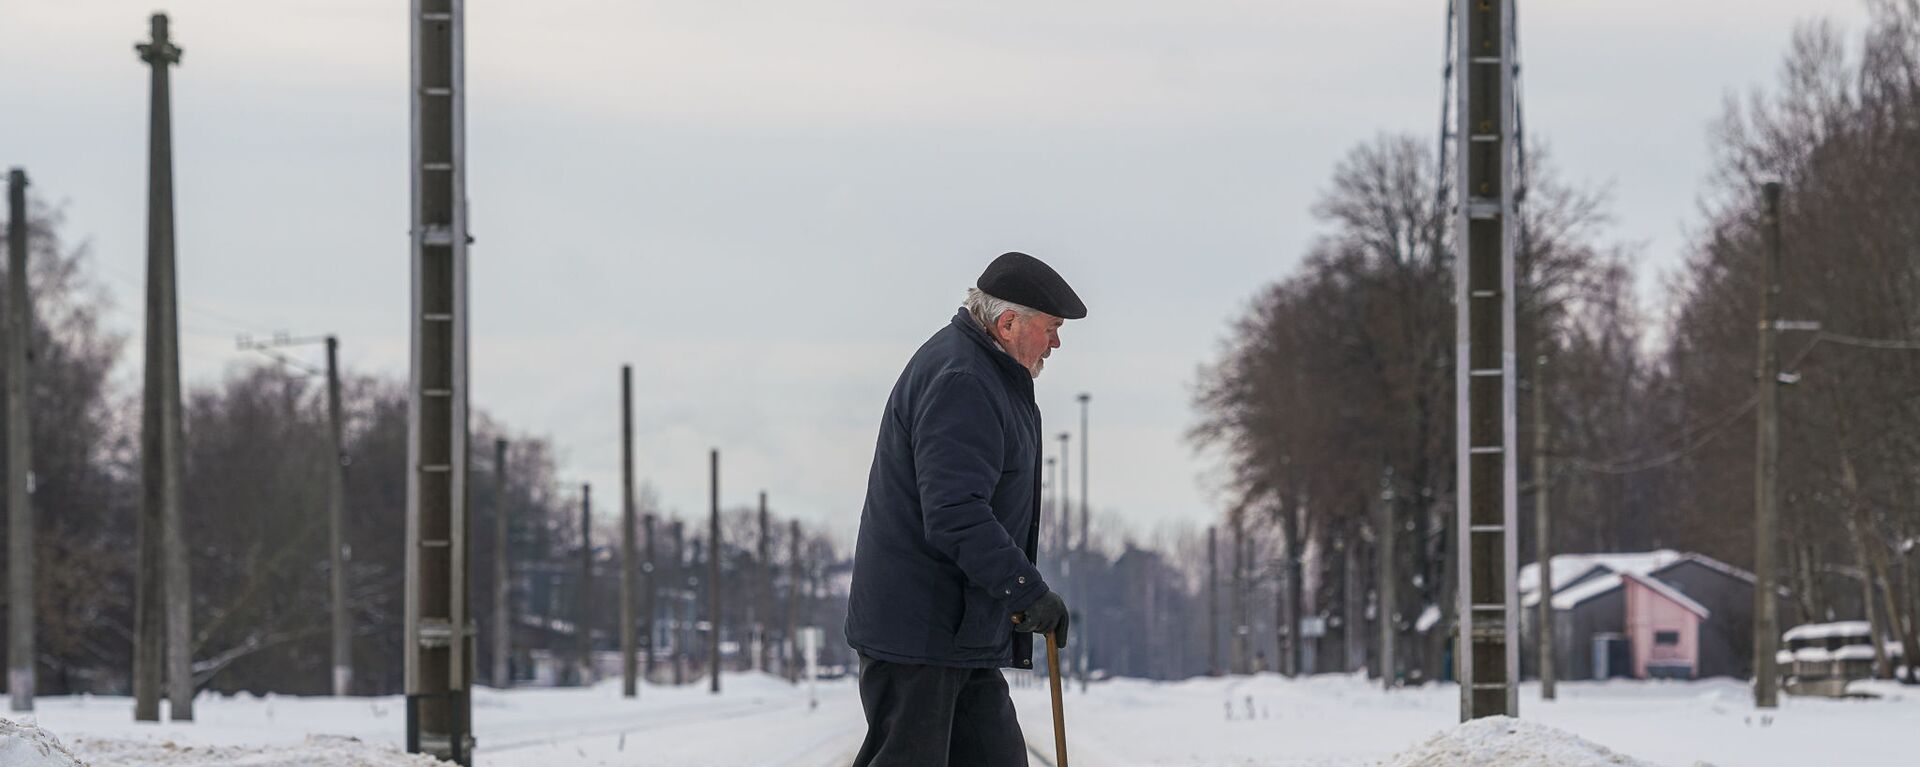 Пожилой мужчина переходит через железнодорожные пути - Sputnik Латвия, 1920, 03.12.2021